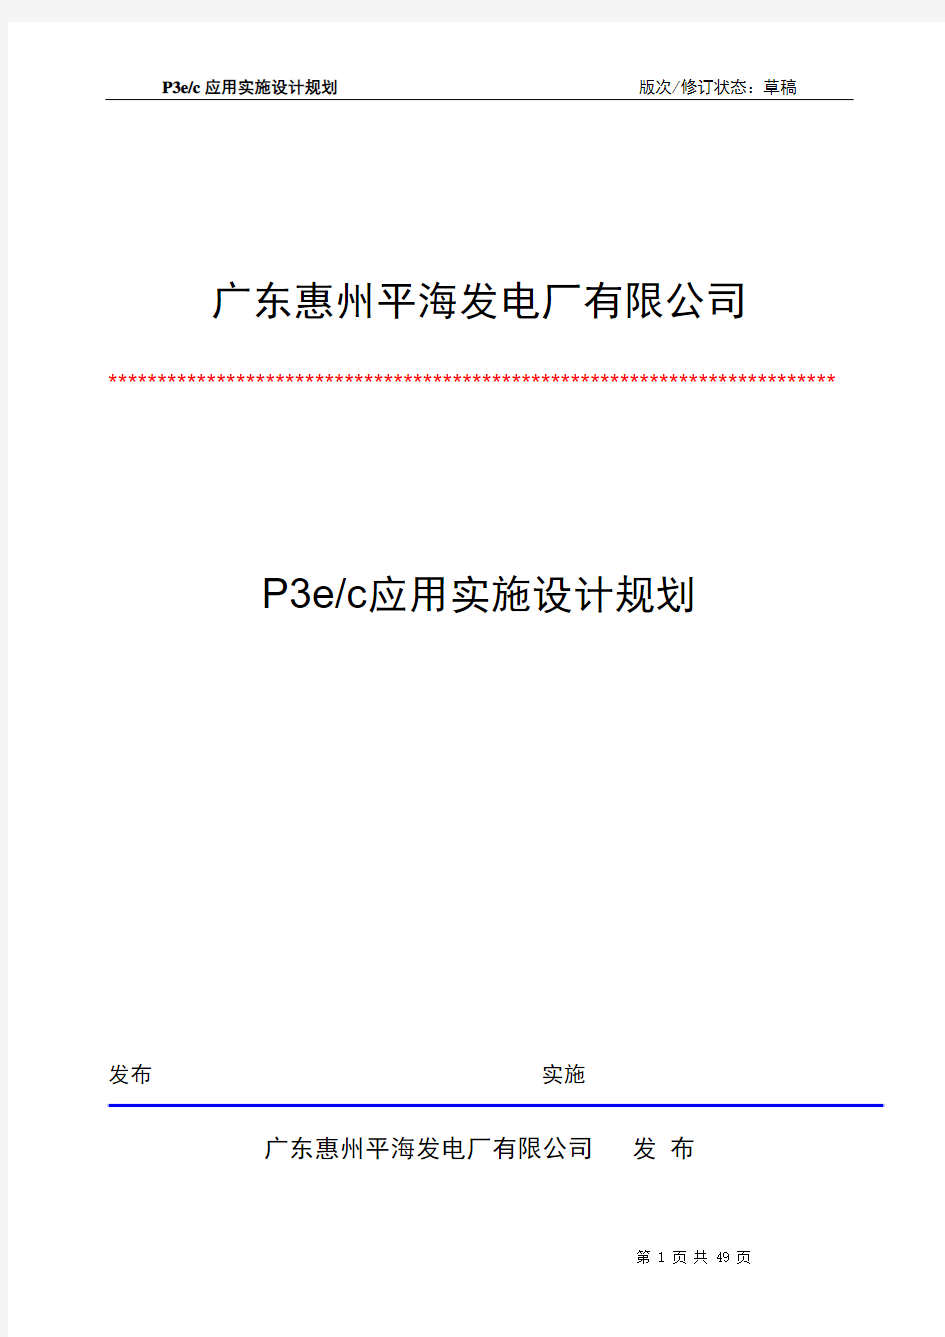 平海电厂P3EC软件应用实施设计规划(zml)